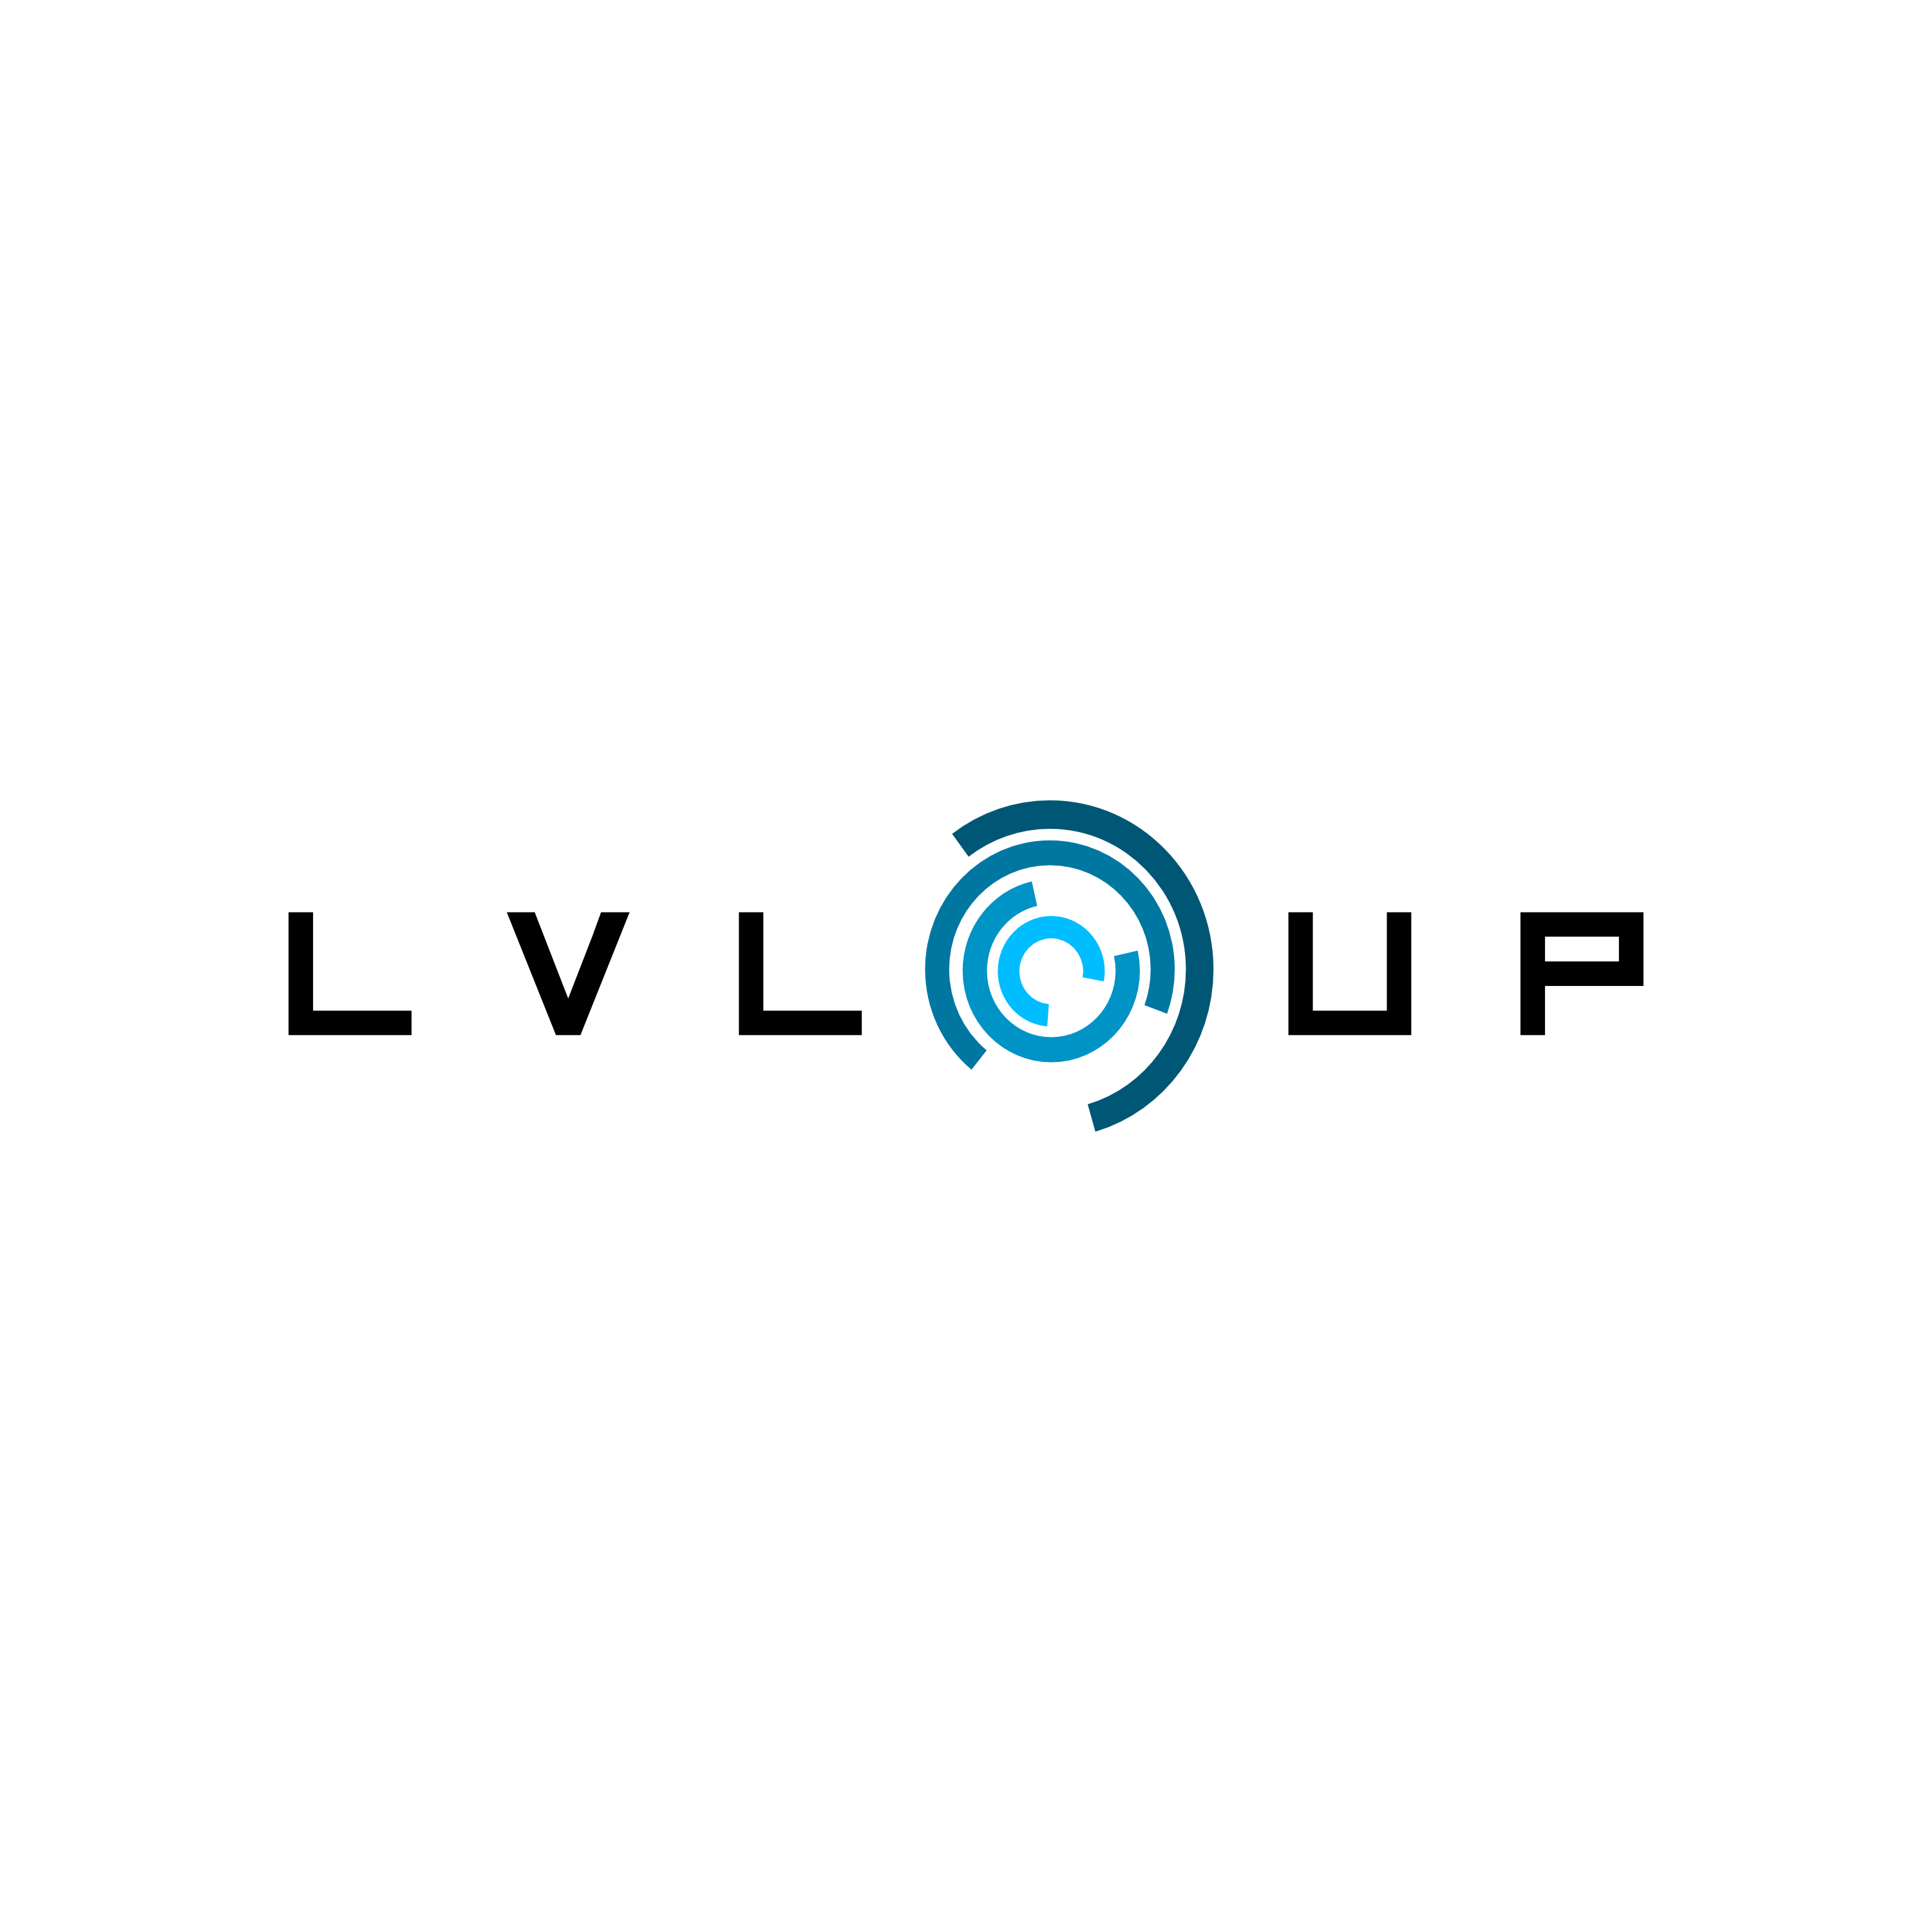 LVL-Up